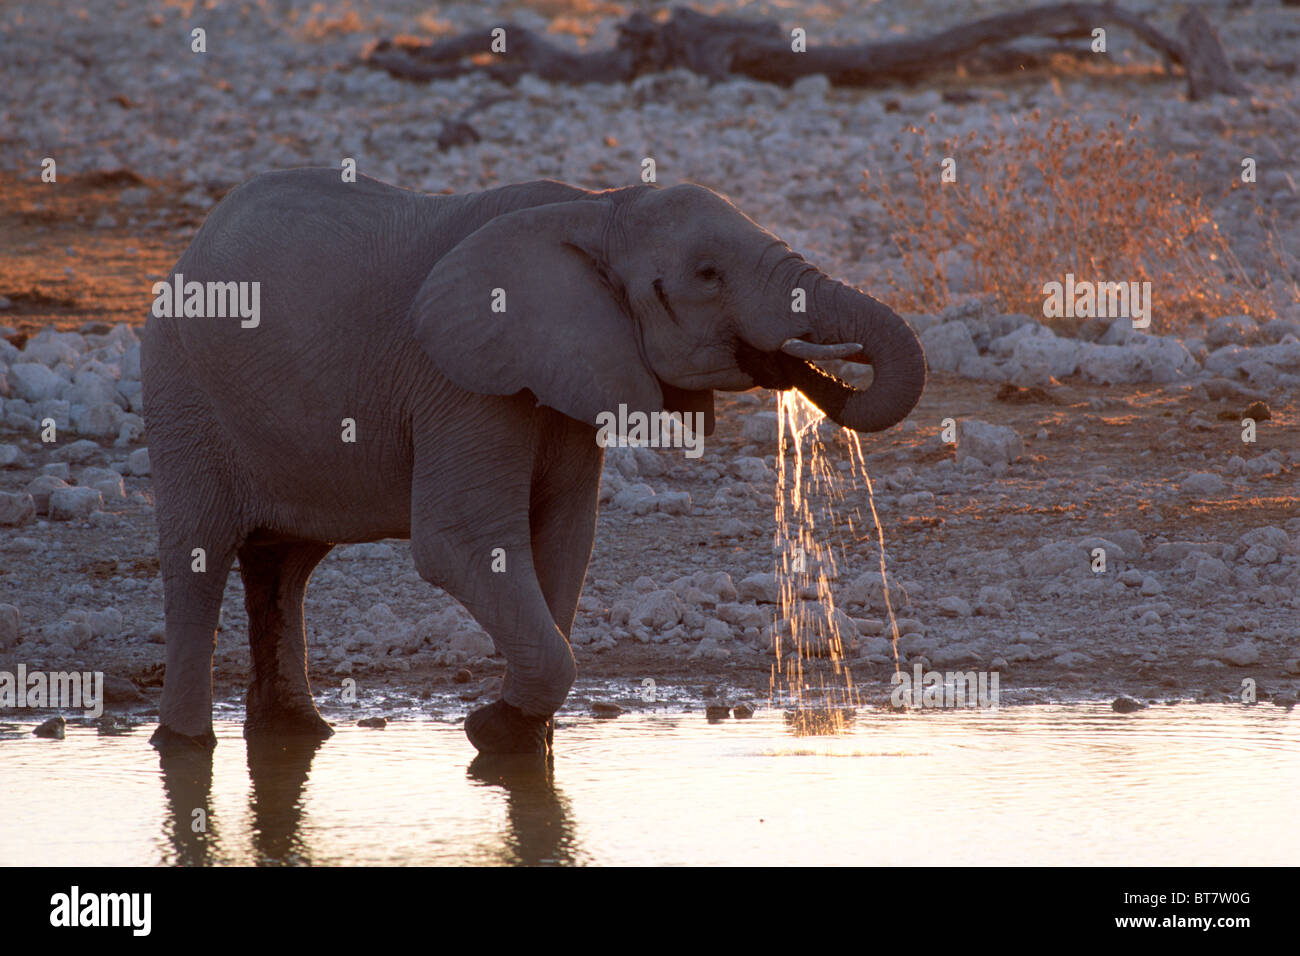 Bush africain Elephant (Loxodonta africana) de l'eau potable dans la dernière lumière du soir, Etosha National Park, Namibie, Afrique Banque D'Images